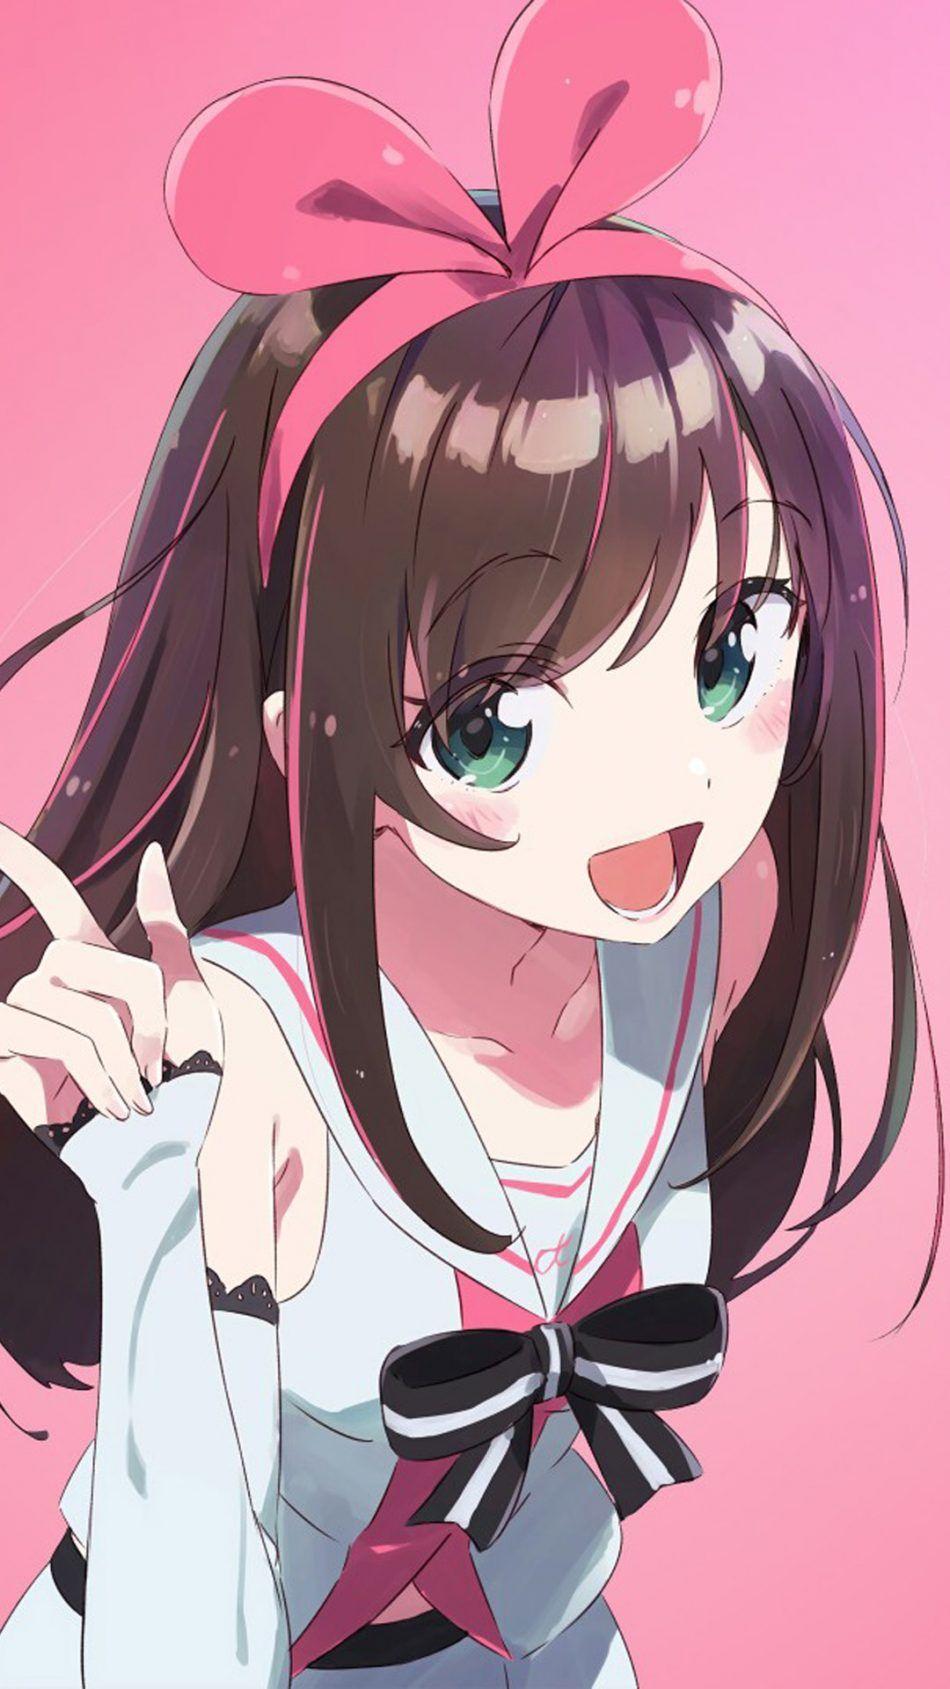 Cute Chibi Anime Girl Wallpapers - Top Những Hình Ảnh Đẹp